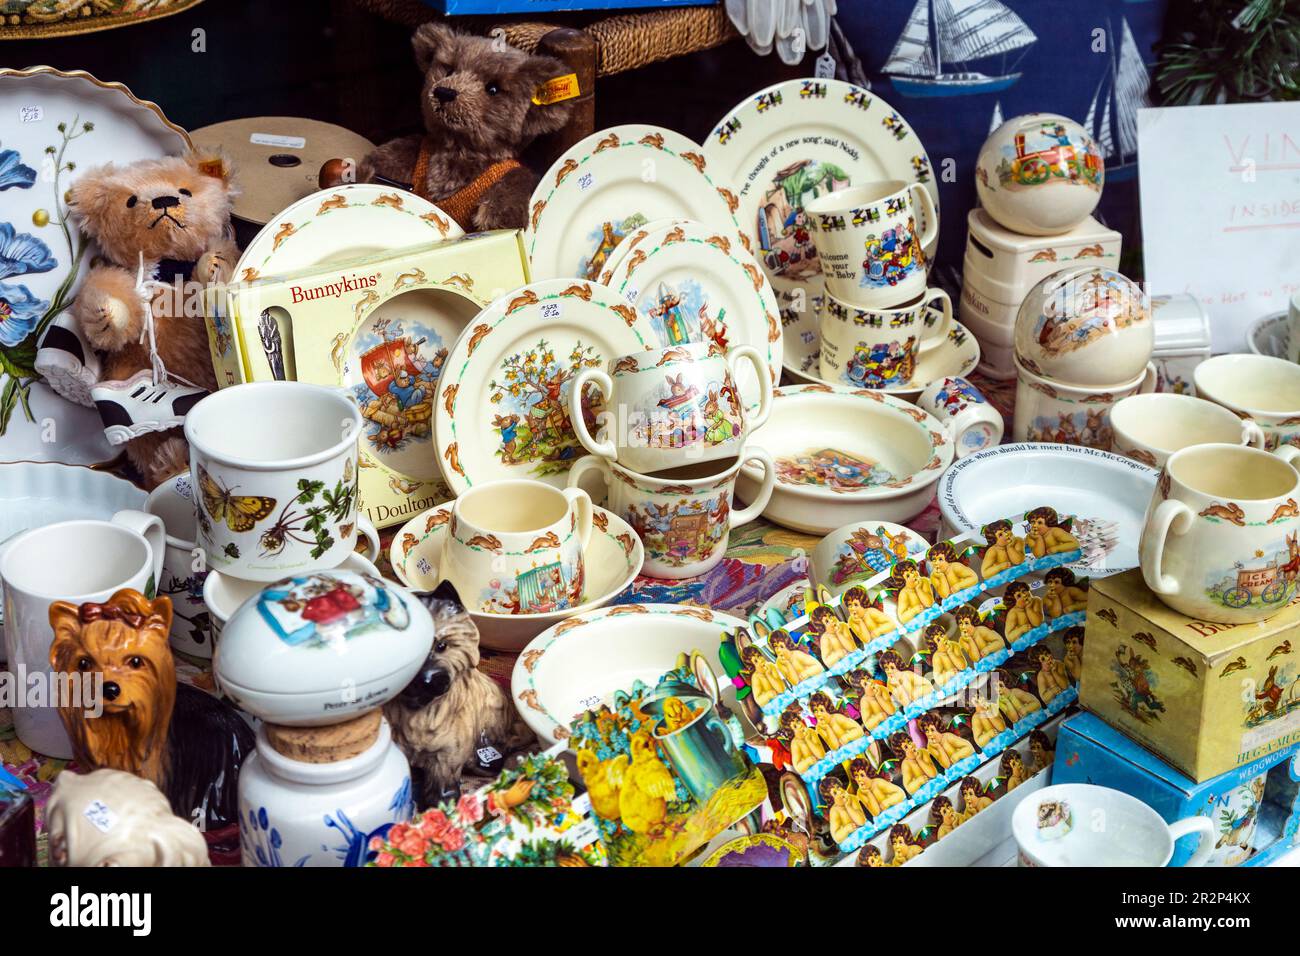 Royal Doulton Bunnykins china wird in einem Oldtimer-Laden auf der George Street, Hastings, England, ausgestellt Stockfoto